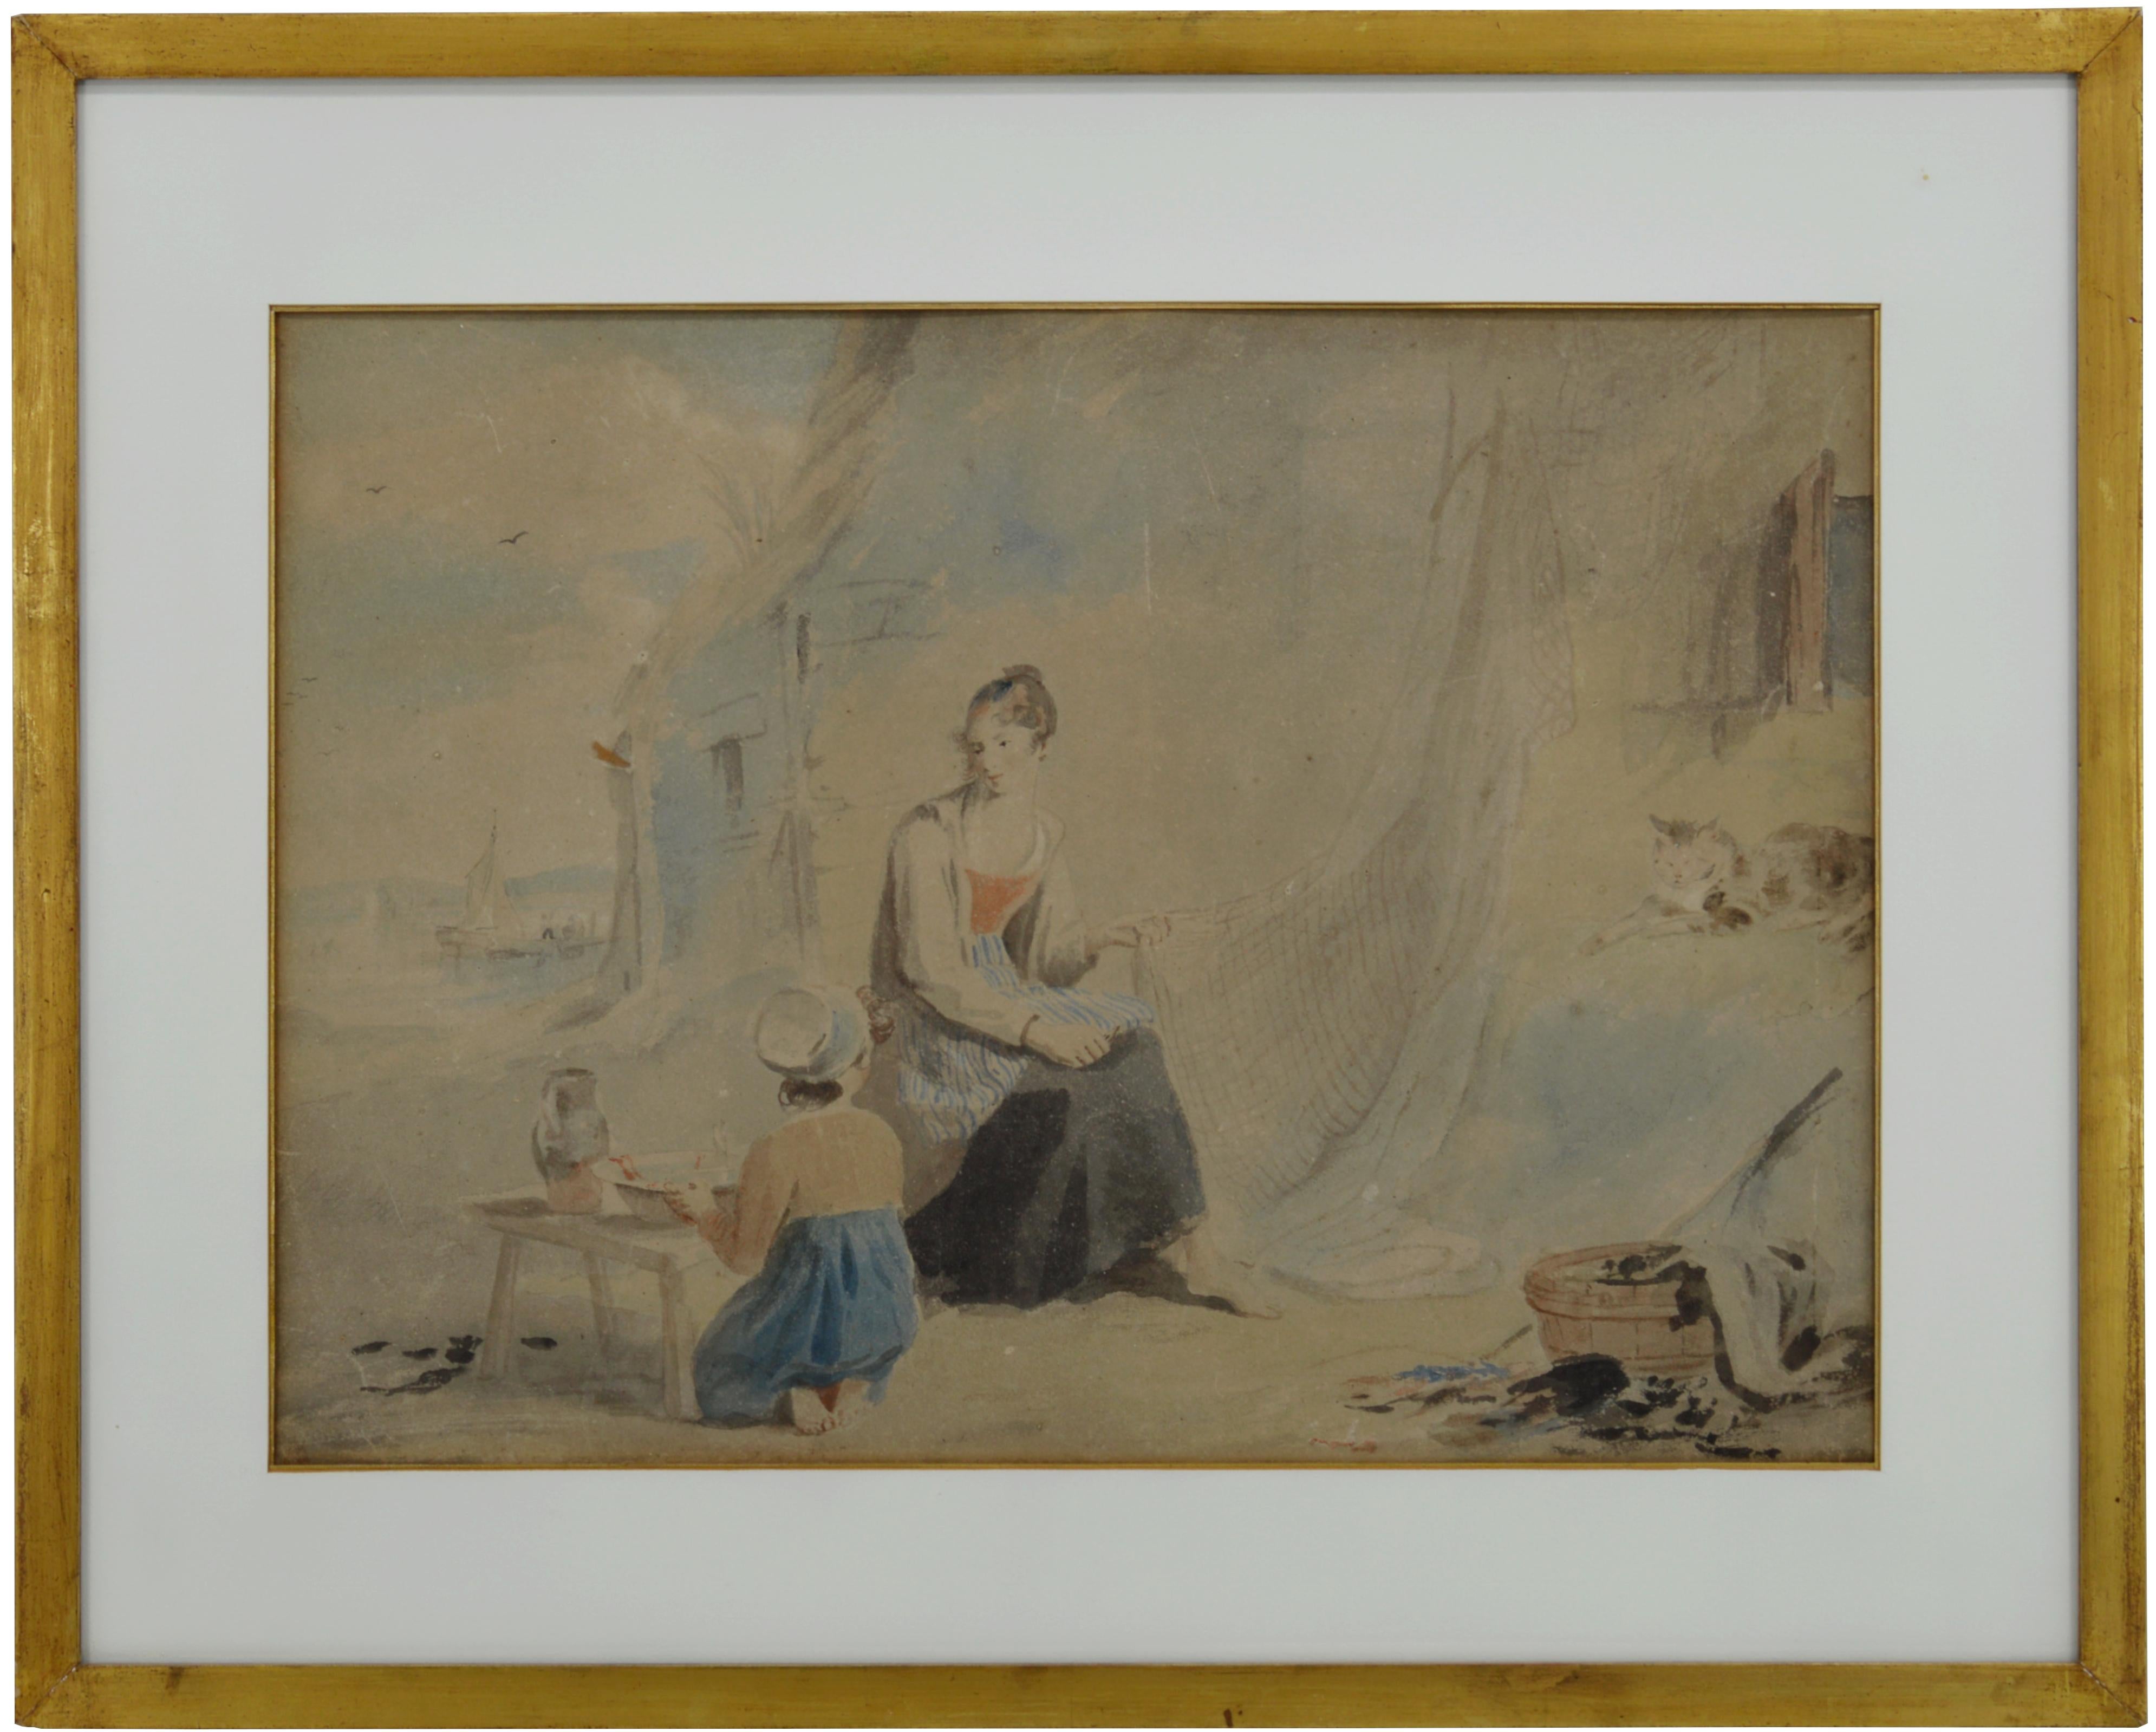 Précieuse aquarelle attribuée à James WARD (1769-1859) - Angleterre, 1830-1840. La famille du pêcheur. Dimensions : Vue : 20 "x14.6" (51x37 cm), Avec cadre : 26.6 "x21.5" (67.5x54.5 cm). Le cadre est doré avec des feuilles d'or. Non signée. Achetée